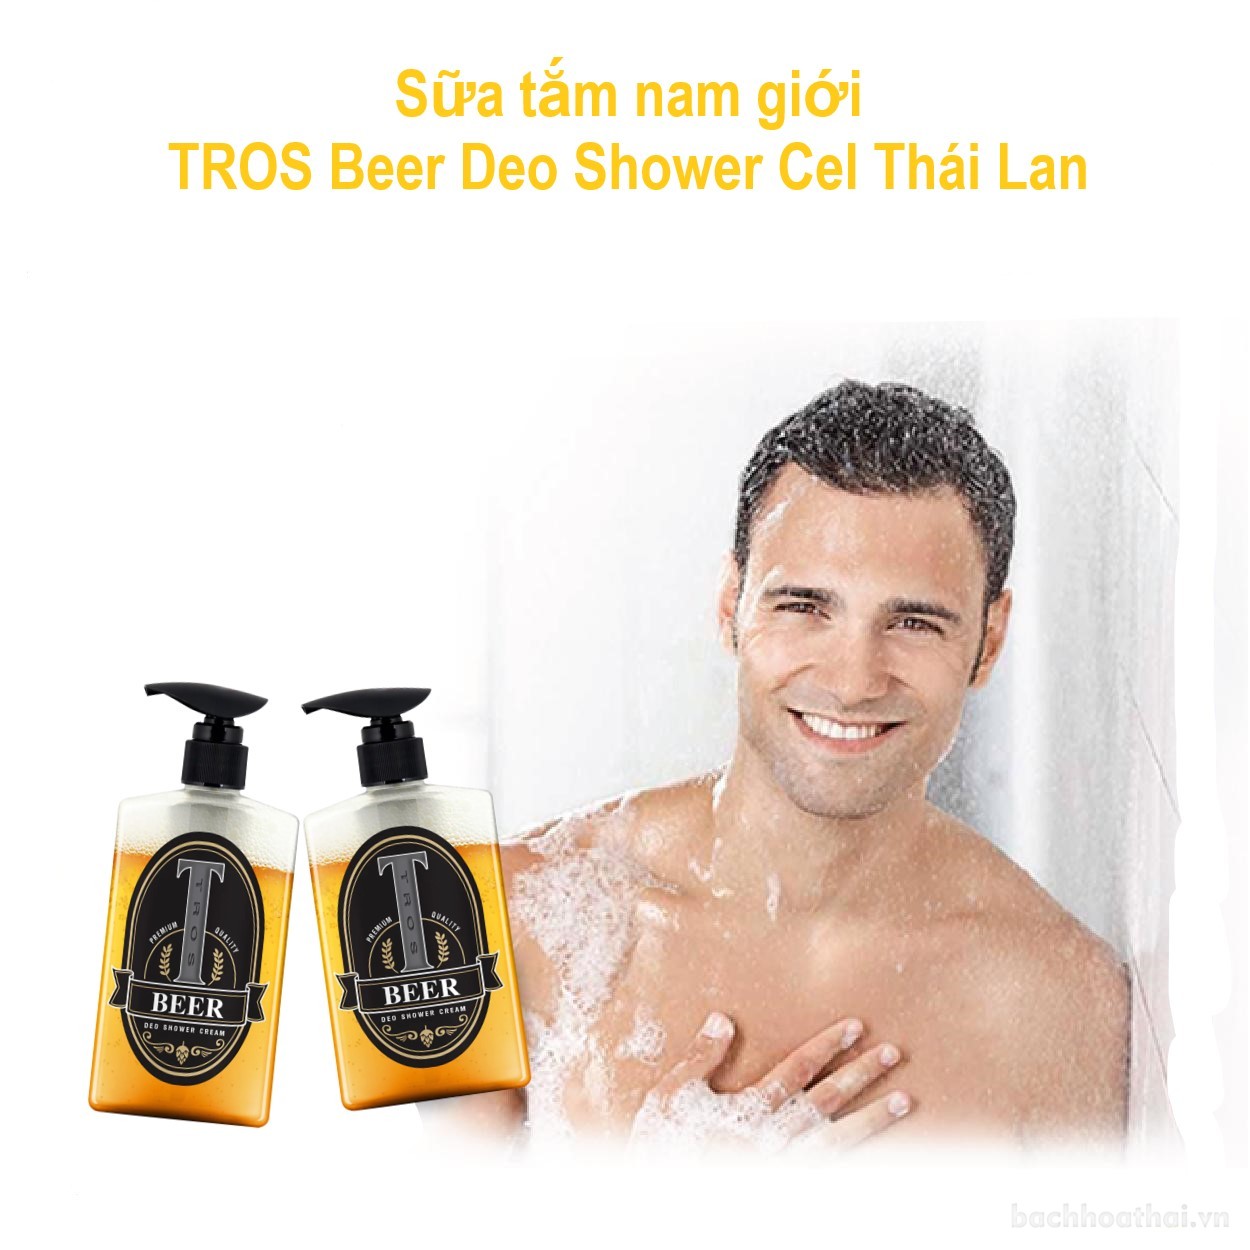 Sữa tắm dành cho nam TROS Beer Deo Shower Cel Thái Lan